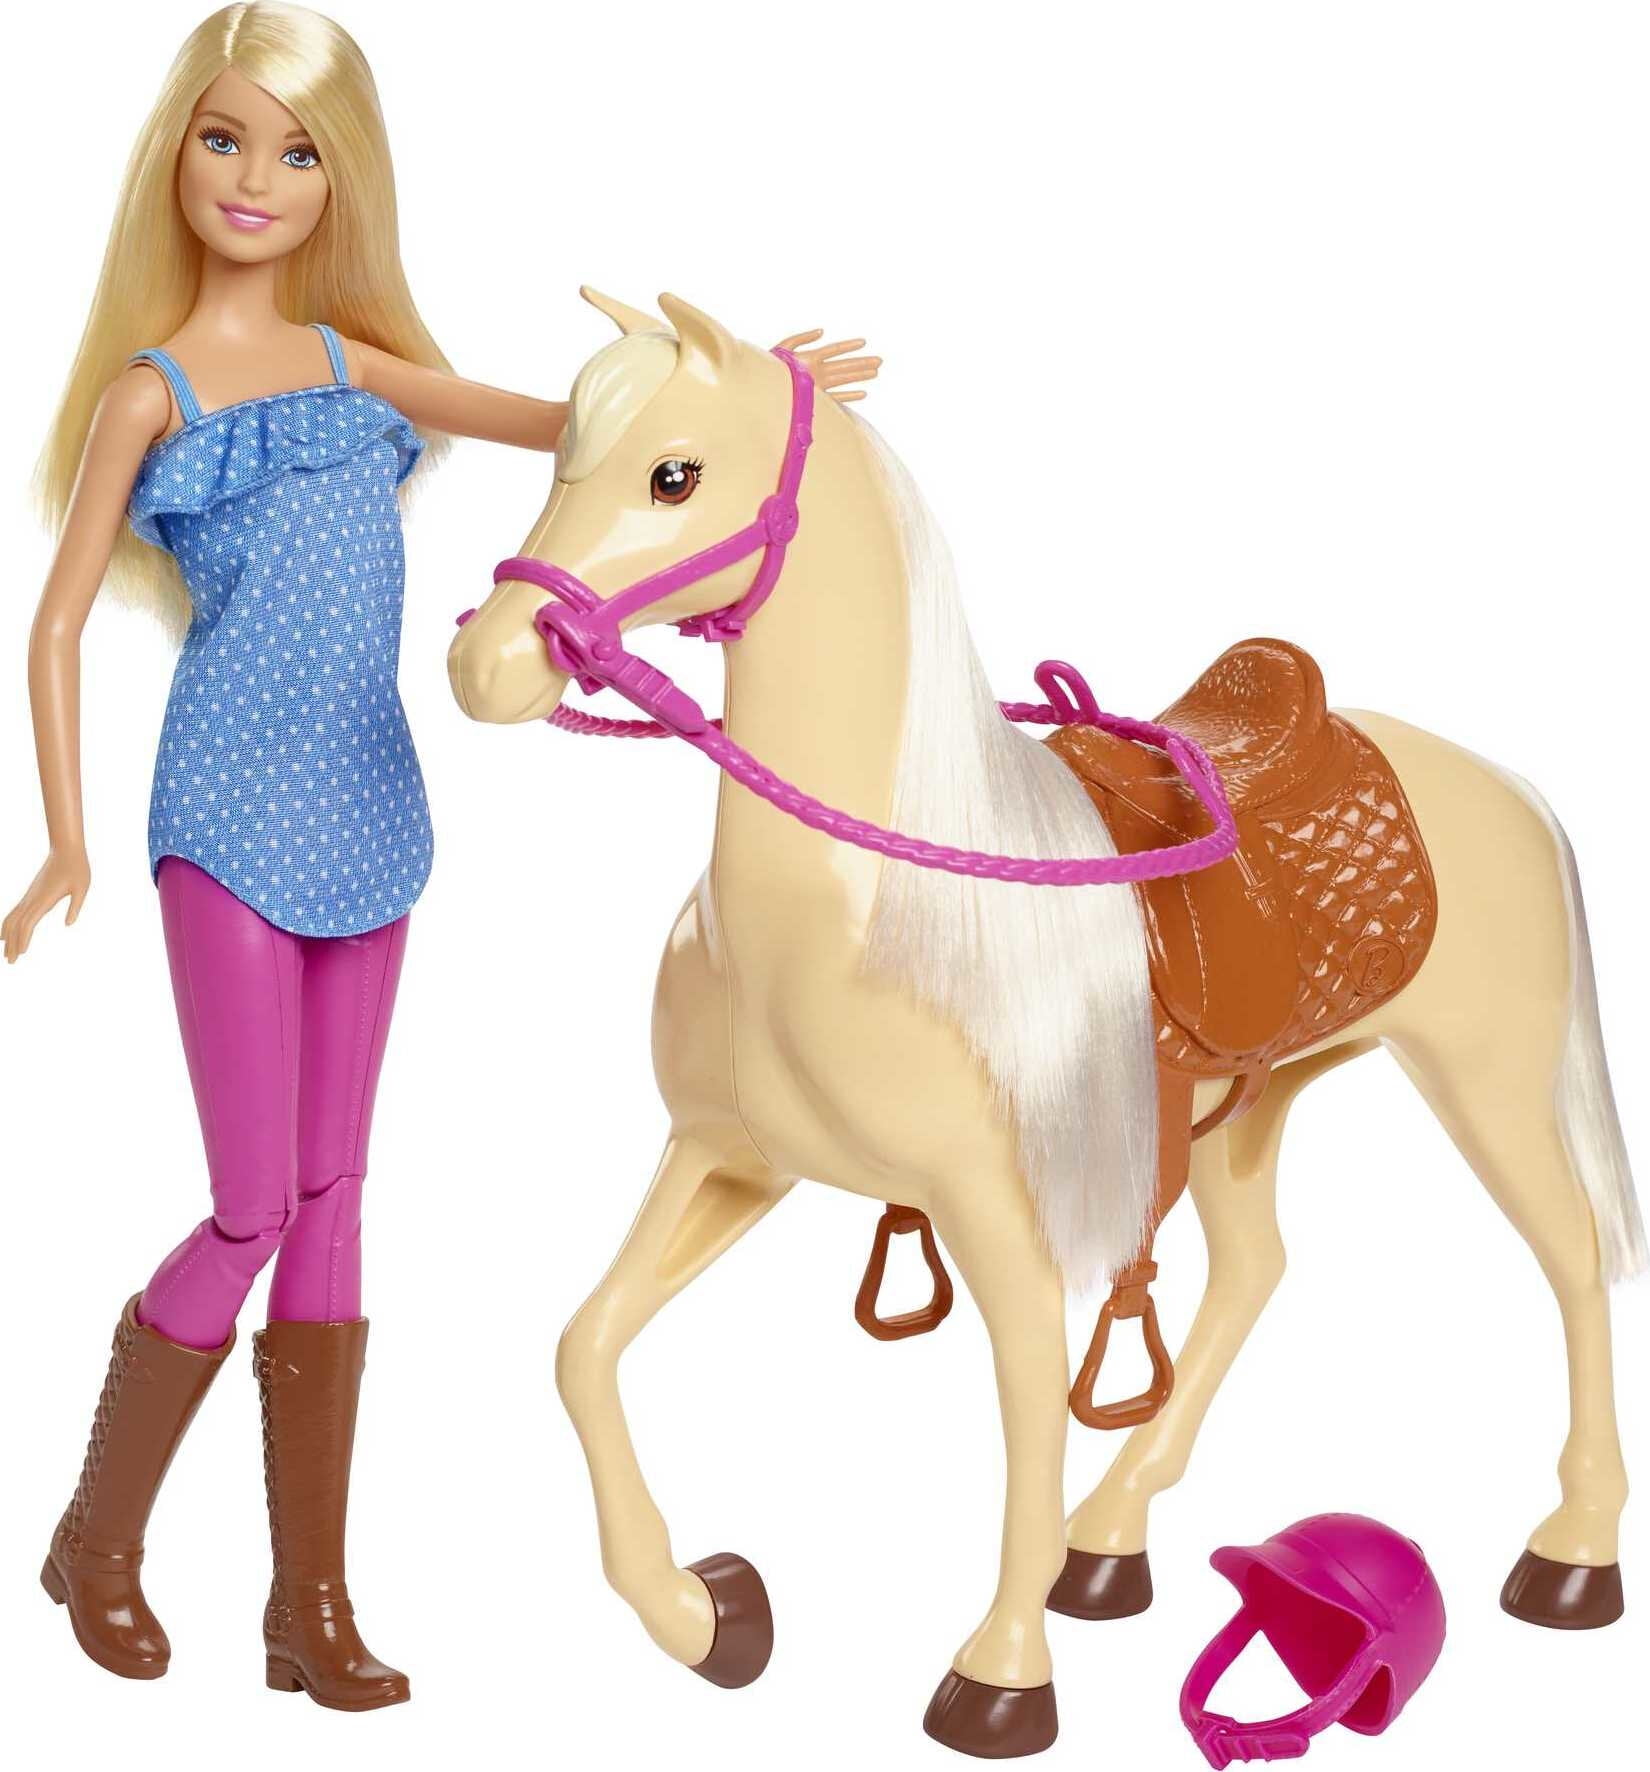 Rengør soveværelset Allergisk Forudsige Barbie Doll & Horse Set with Blonde Doll in Riding Outfit, Light Brown Horse,  Saddle, Bridle & Reins - Walmart.com